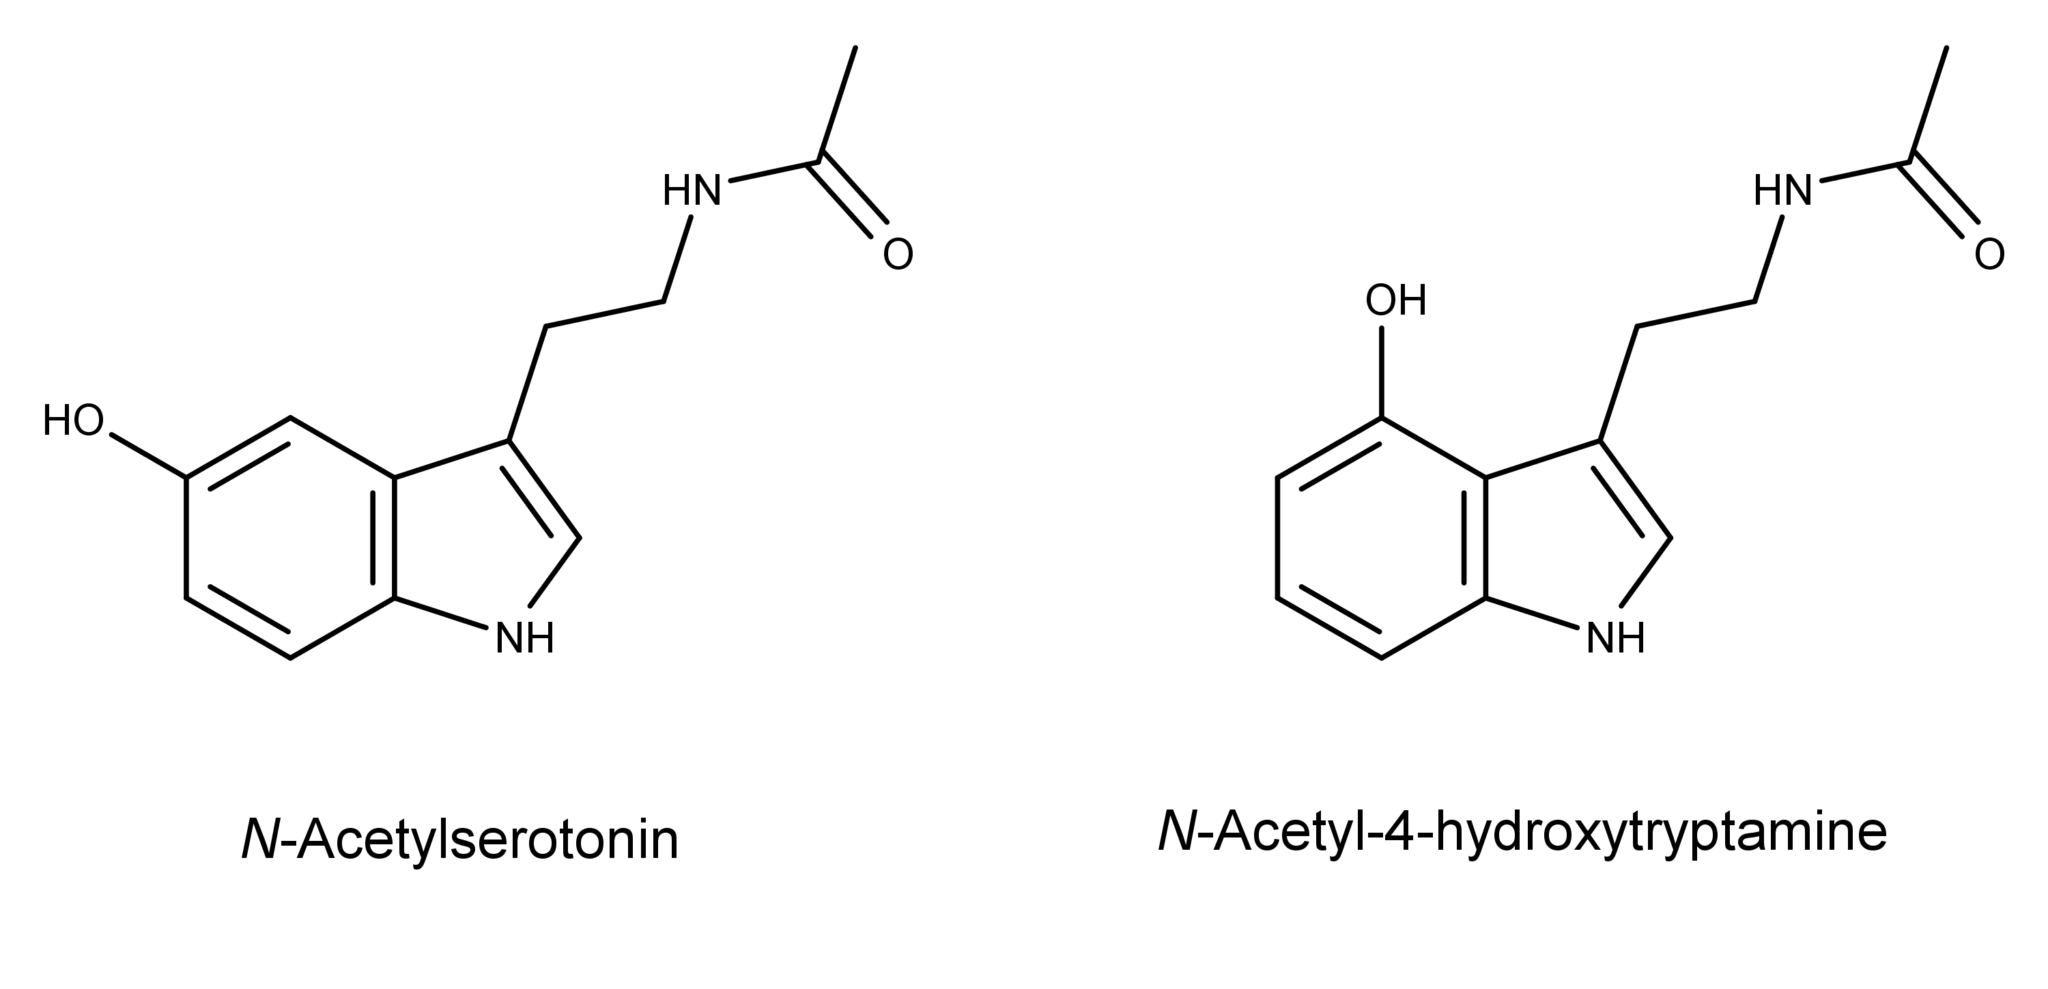 3000-N-acetylserotonin-and-N-acetyl-4-hydroxytryptamine2-2048x989.png